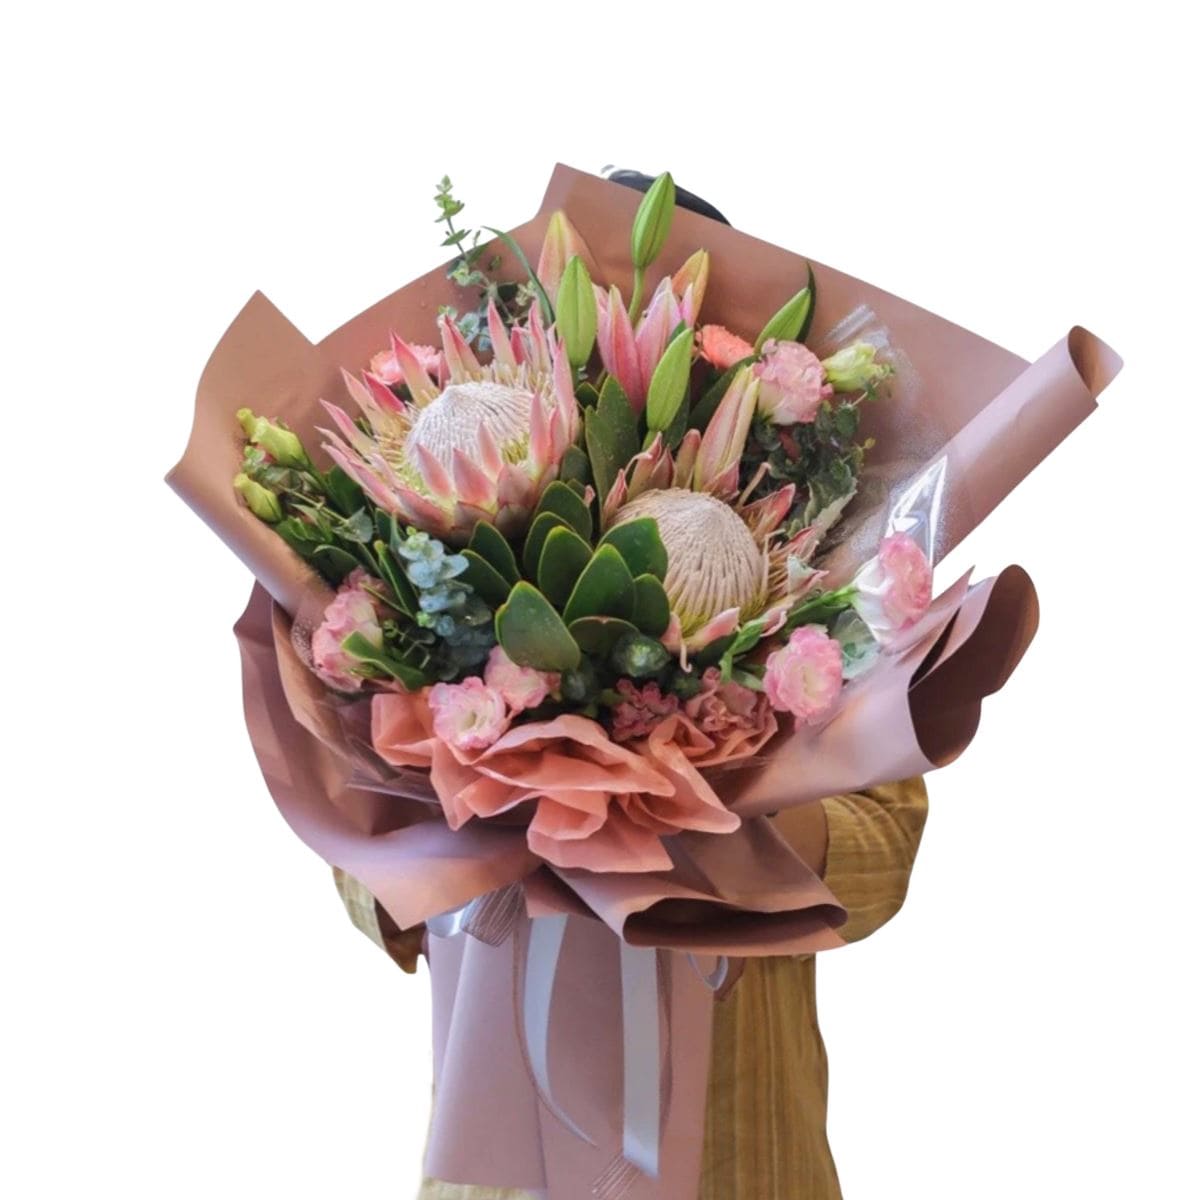 Regal Grace - Flower - Preserved Flowers & Fresh Flower Florist Gift Store